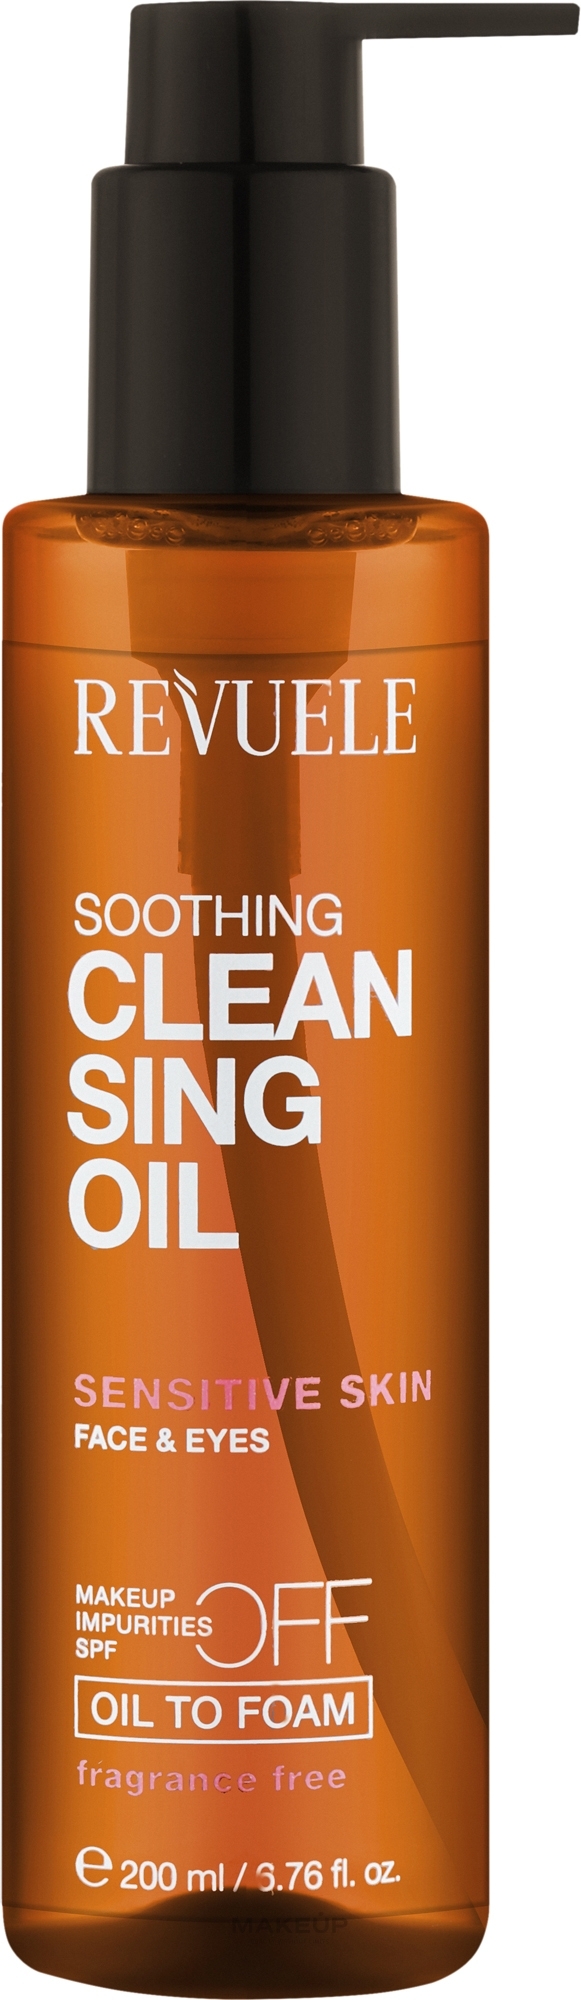 Олія для глибокого очищення обличчя для чутливої шкіри обличчя - Revuele Deep Clean Sing Oil Sensitive Skin — фото 200ml